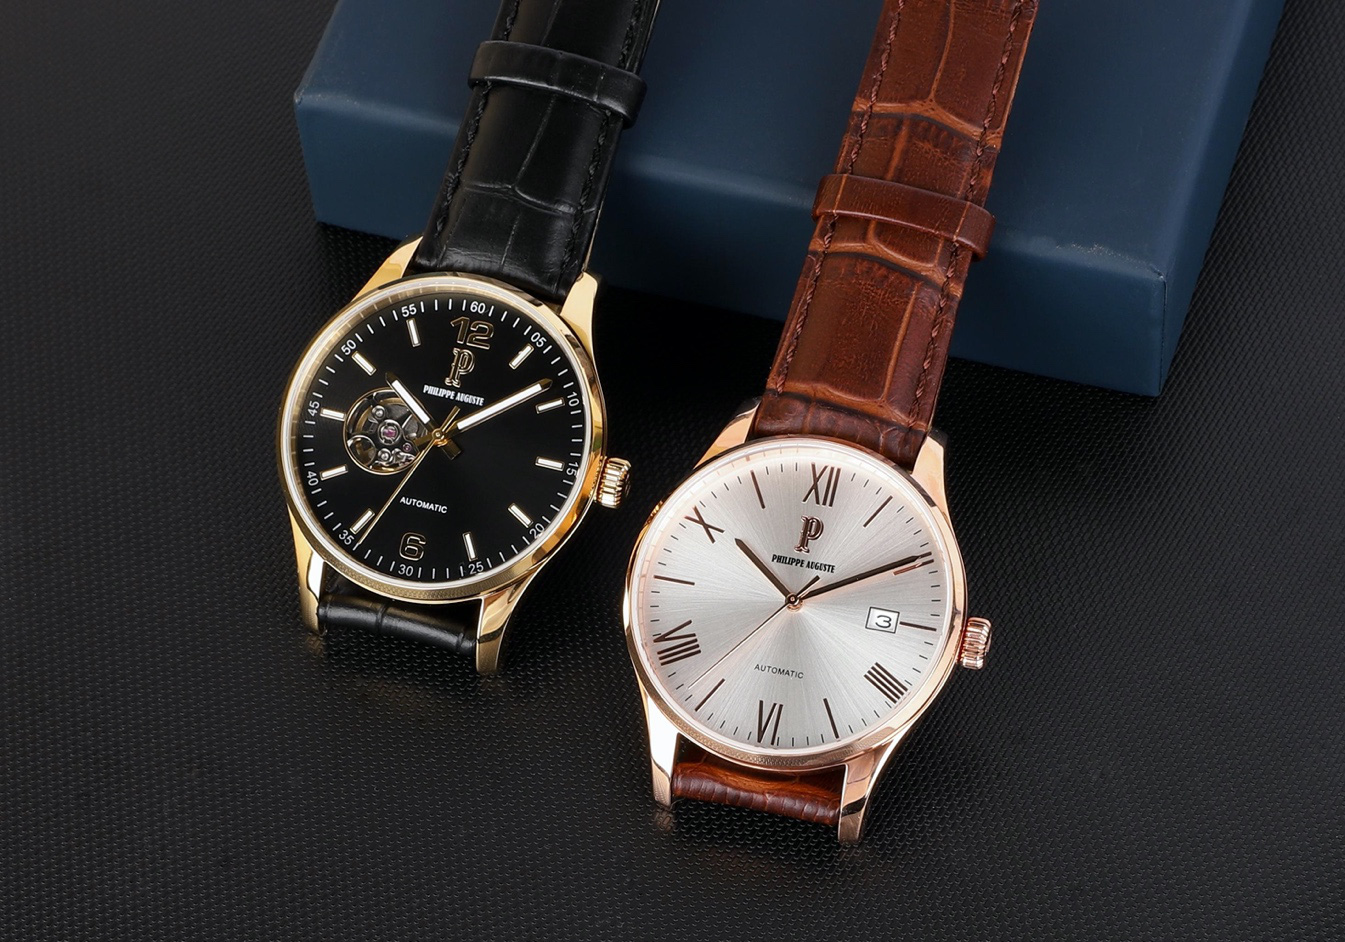 Philippe Auguste - đồng hồ đeo tay đáng mua năm 2020 - Ảnh 1.